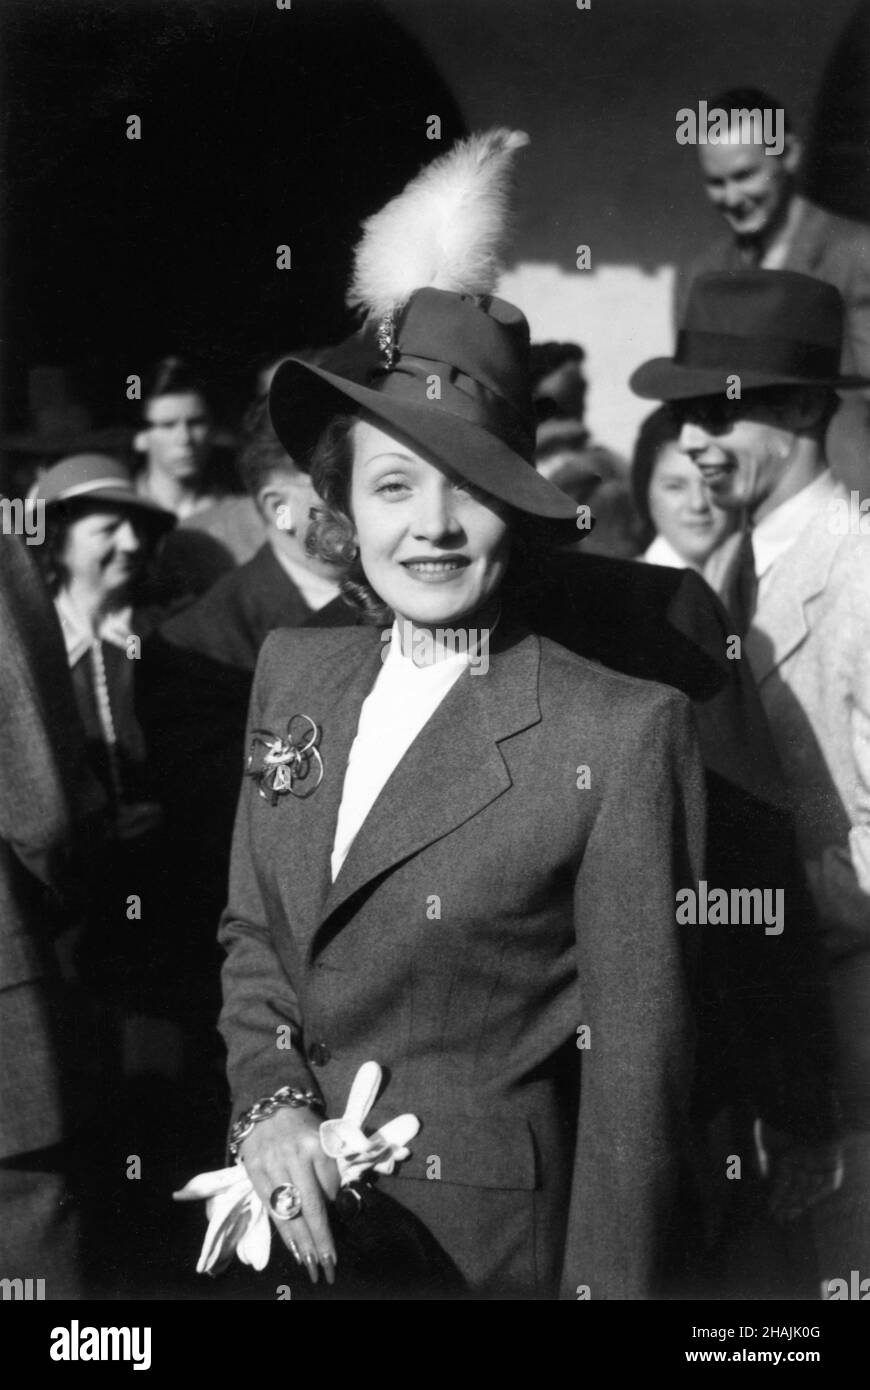 MARLENE DIETRICH Portrait de Candid avec la foule lors d'un événement non identifié vers 1942 Banque D'Images